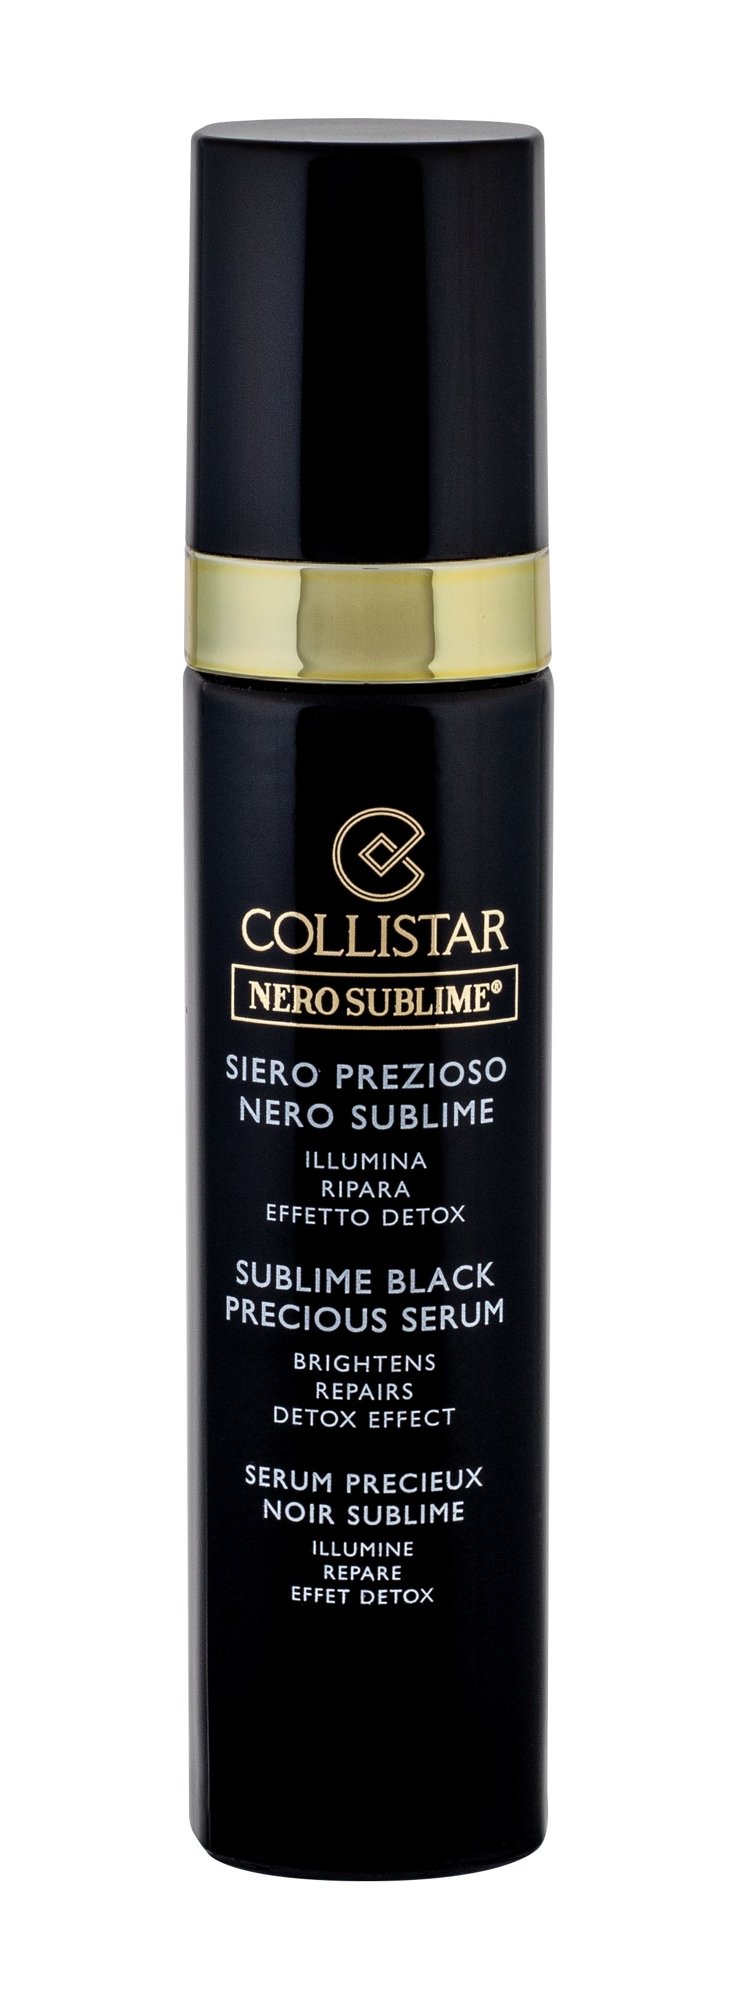 Collistar Nero Sublime Sublime Black Precious Serum 30ml Veido serumas Testeris